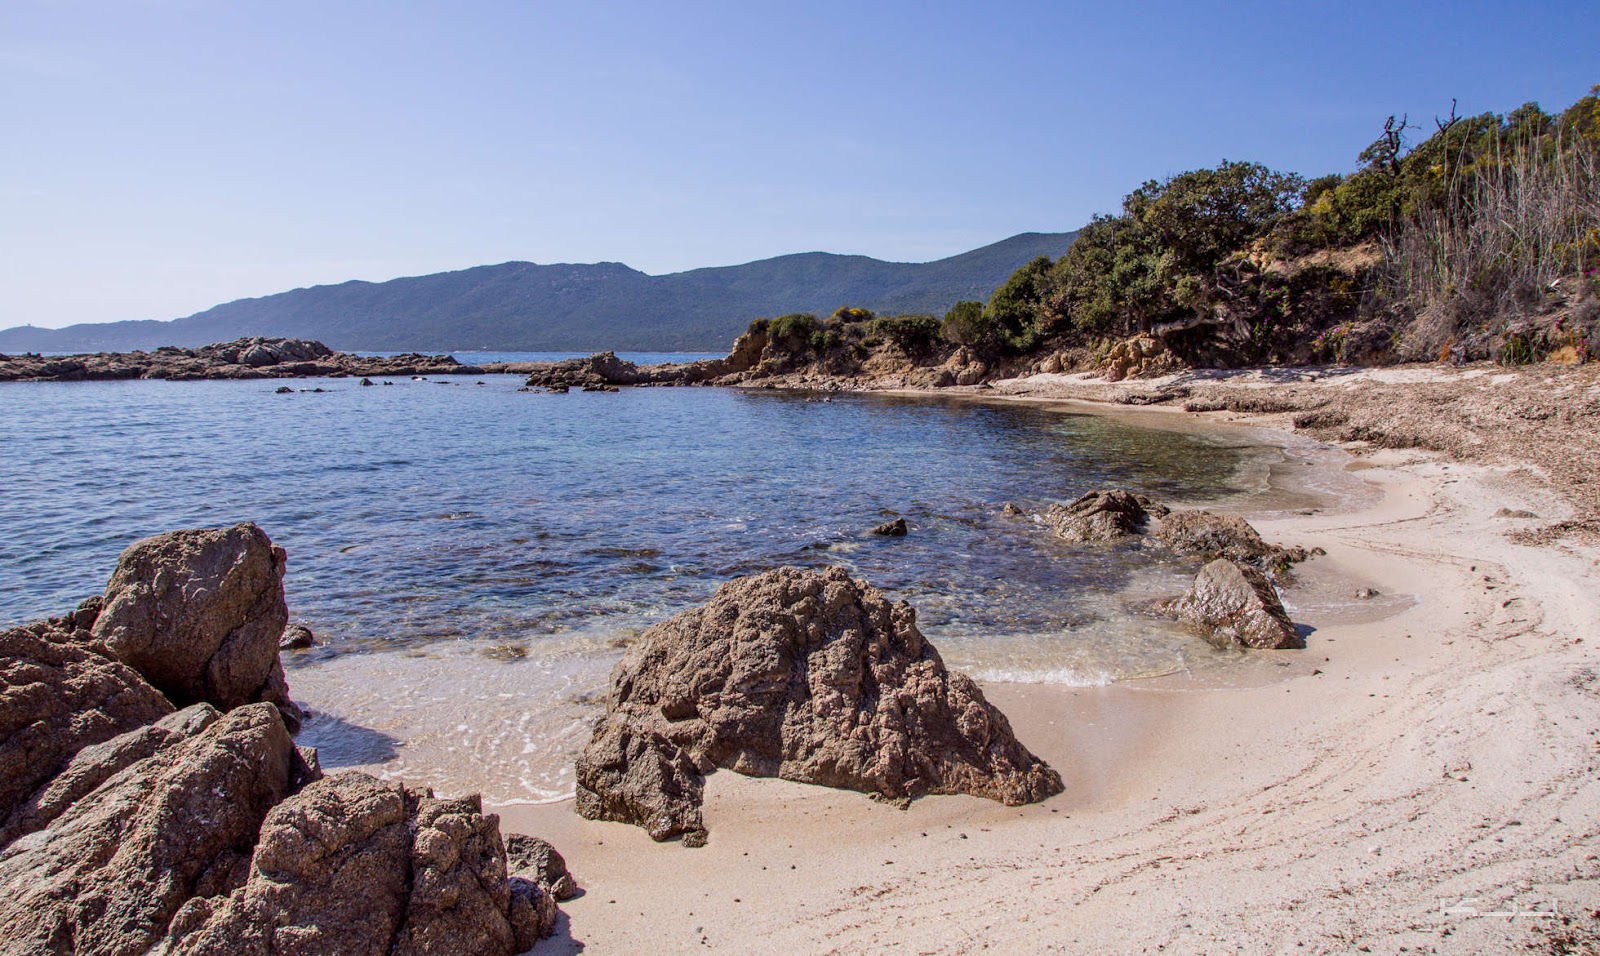 Capanella beach'in fotoğrafı parlak kum ve kayalar yüzey ile